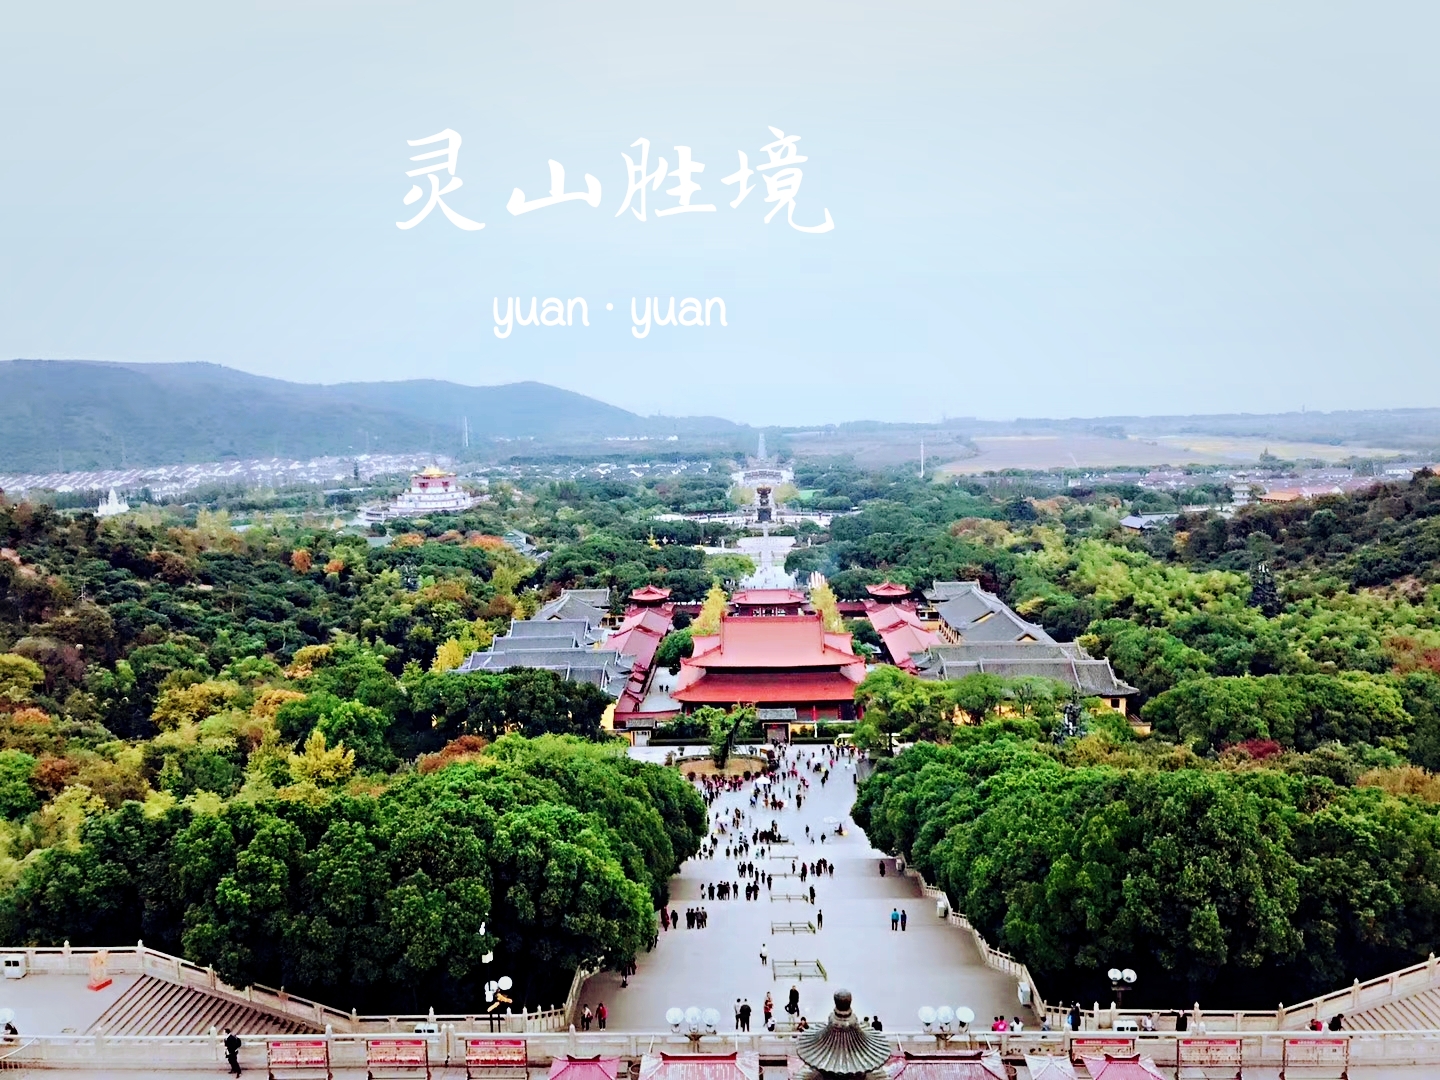 灵山寺 - 中国国家地理最美观景拍摄点